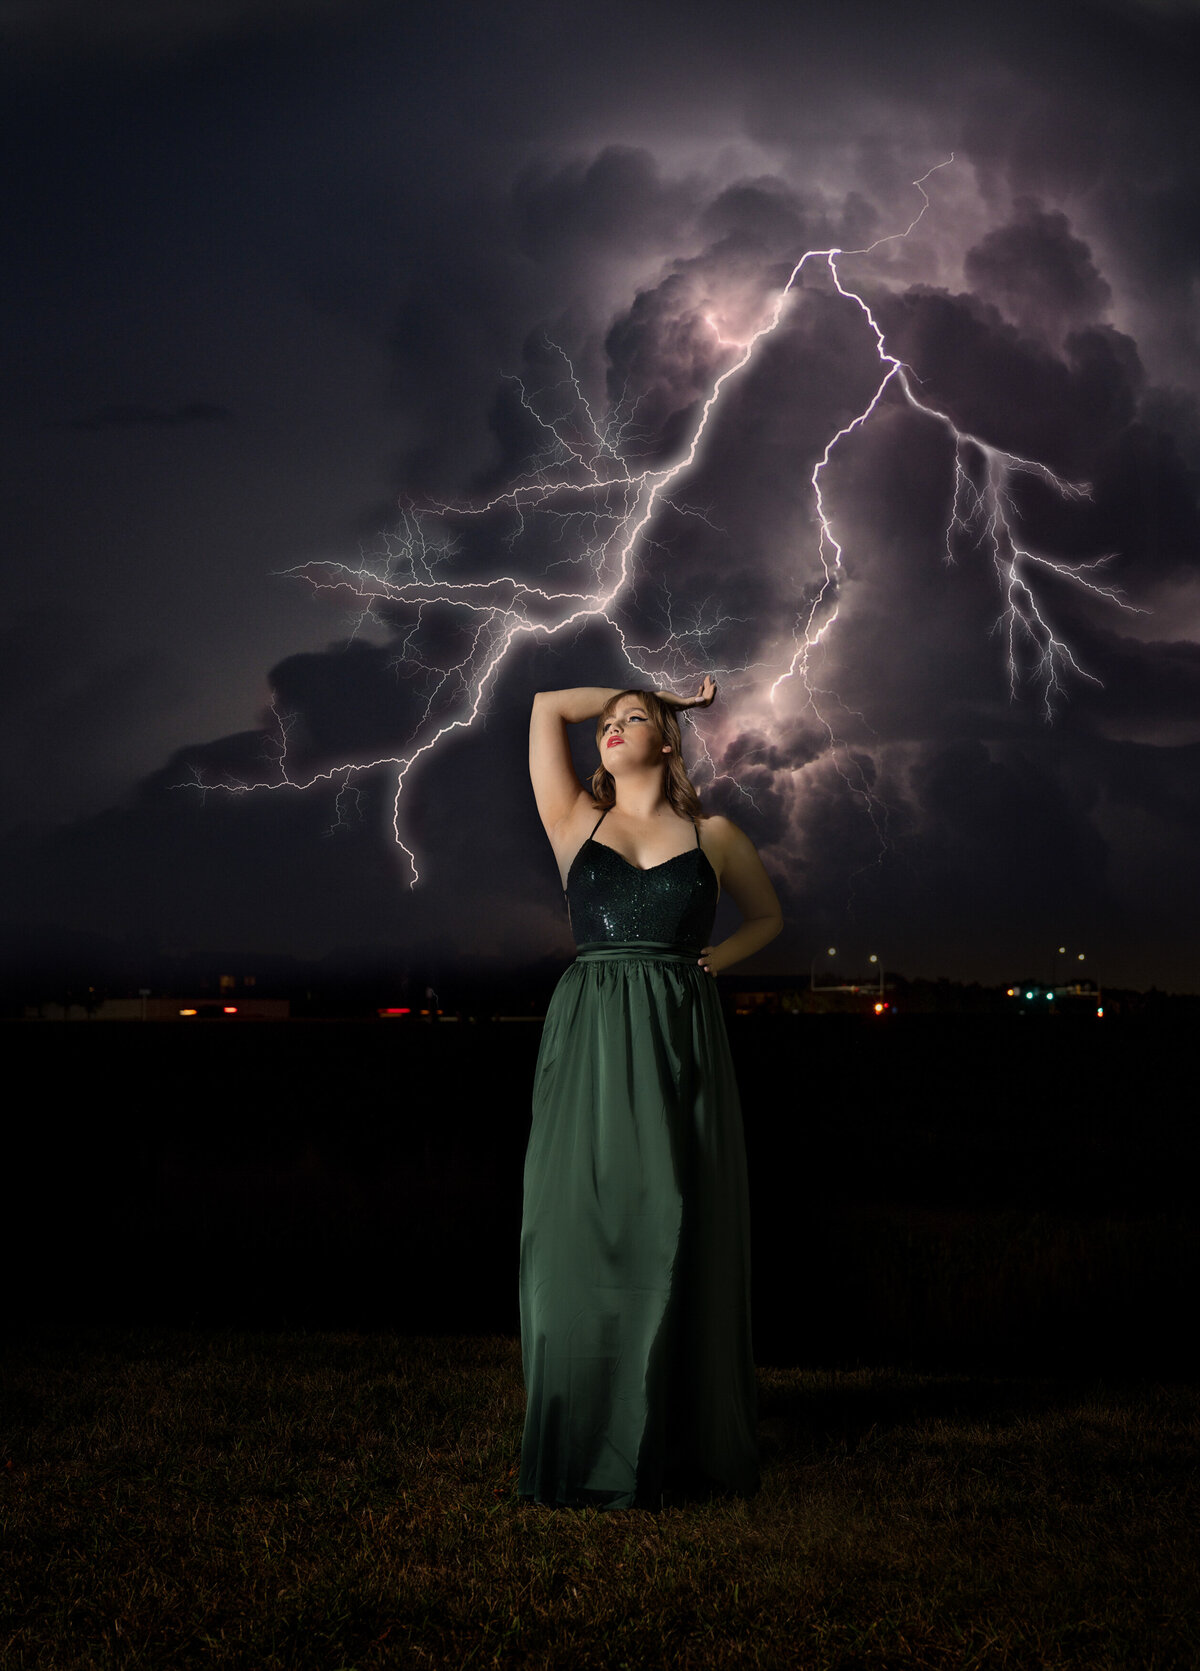 Eden Prairie minnesota high school senior photo of girl in prom dress with lightning